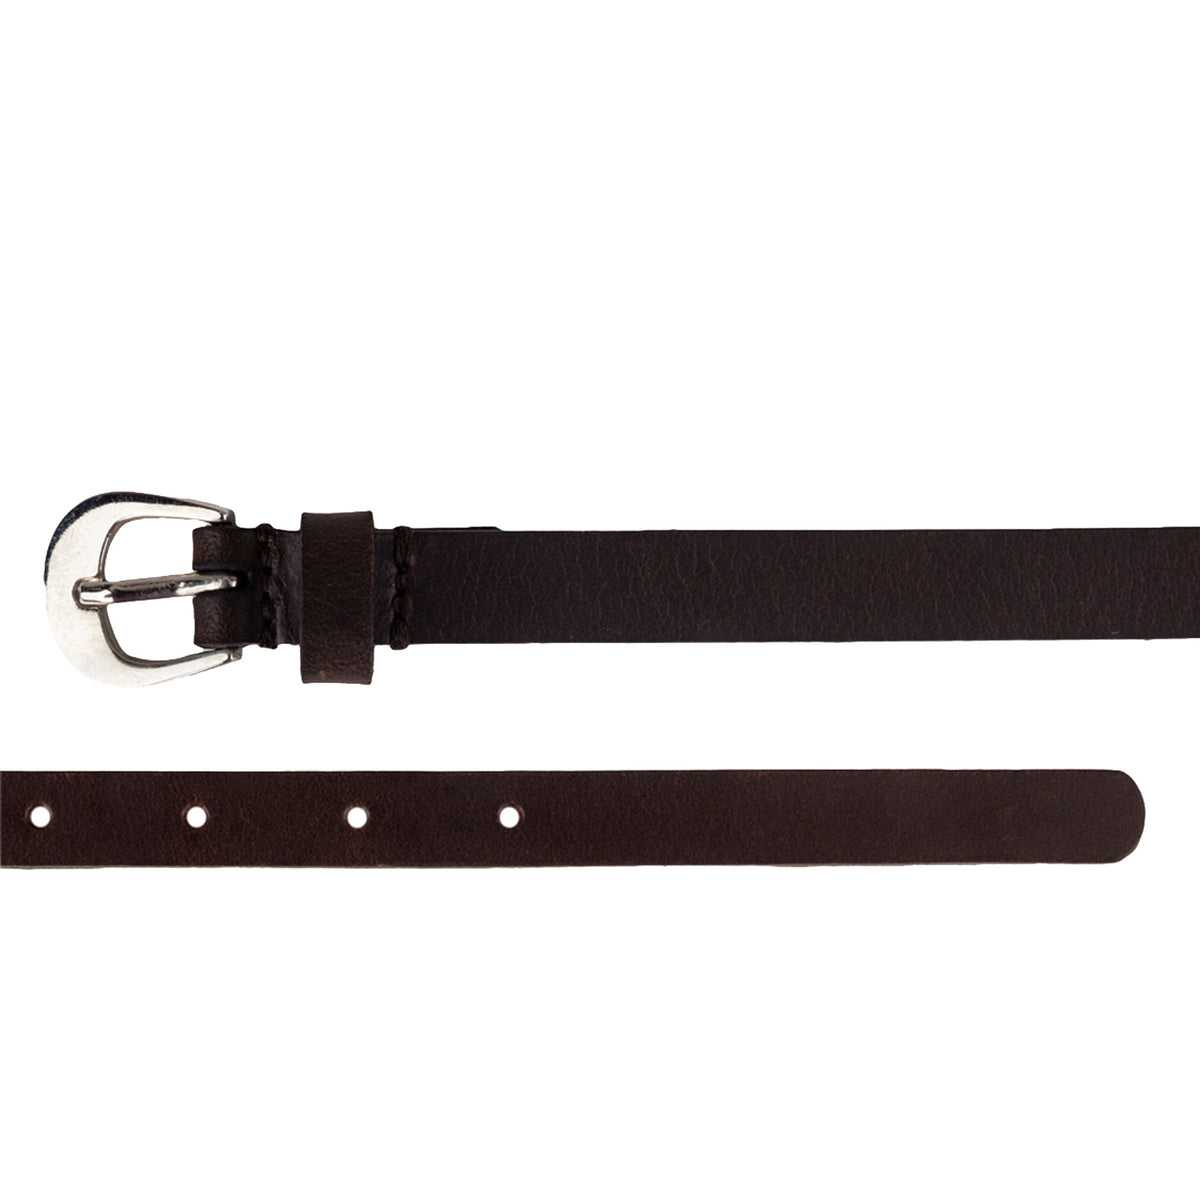 Genuine leather dark brown belt